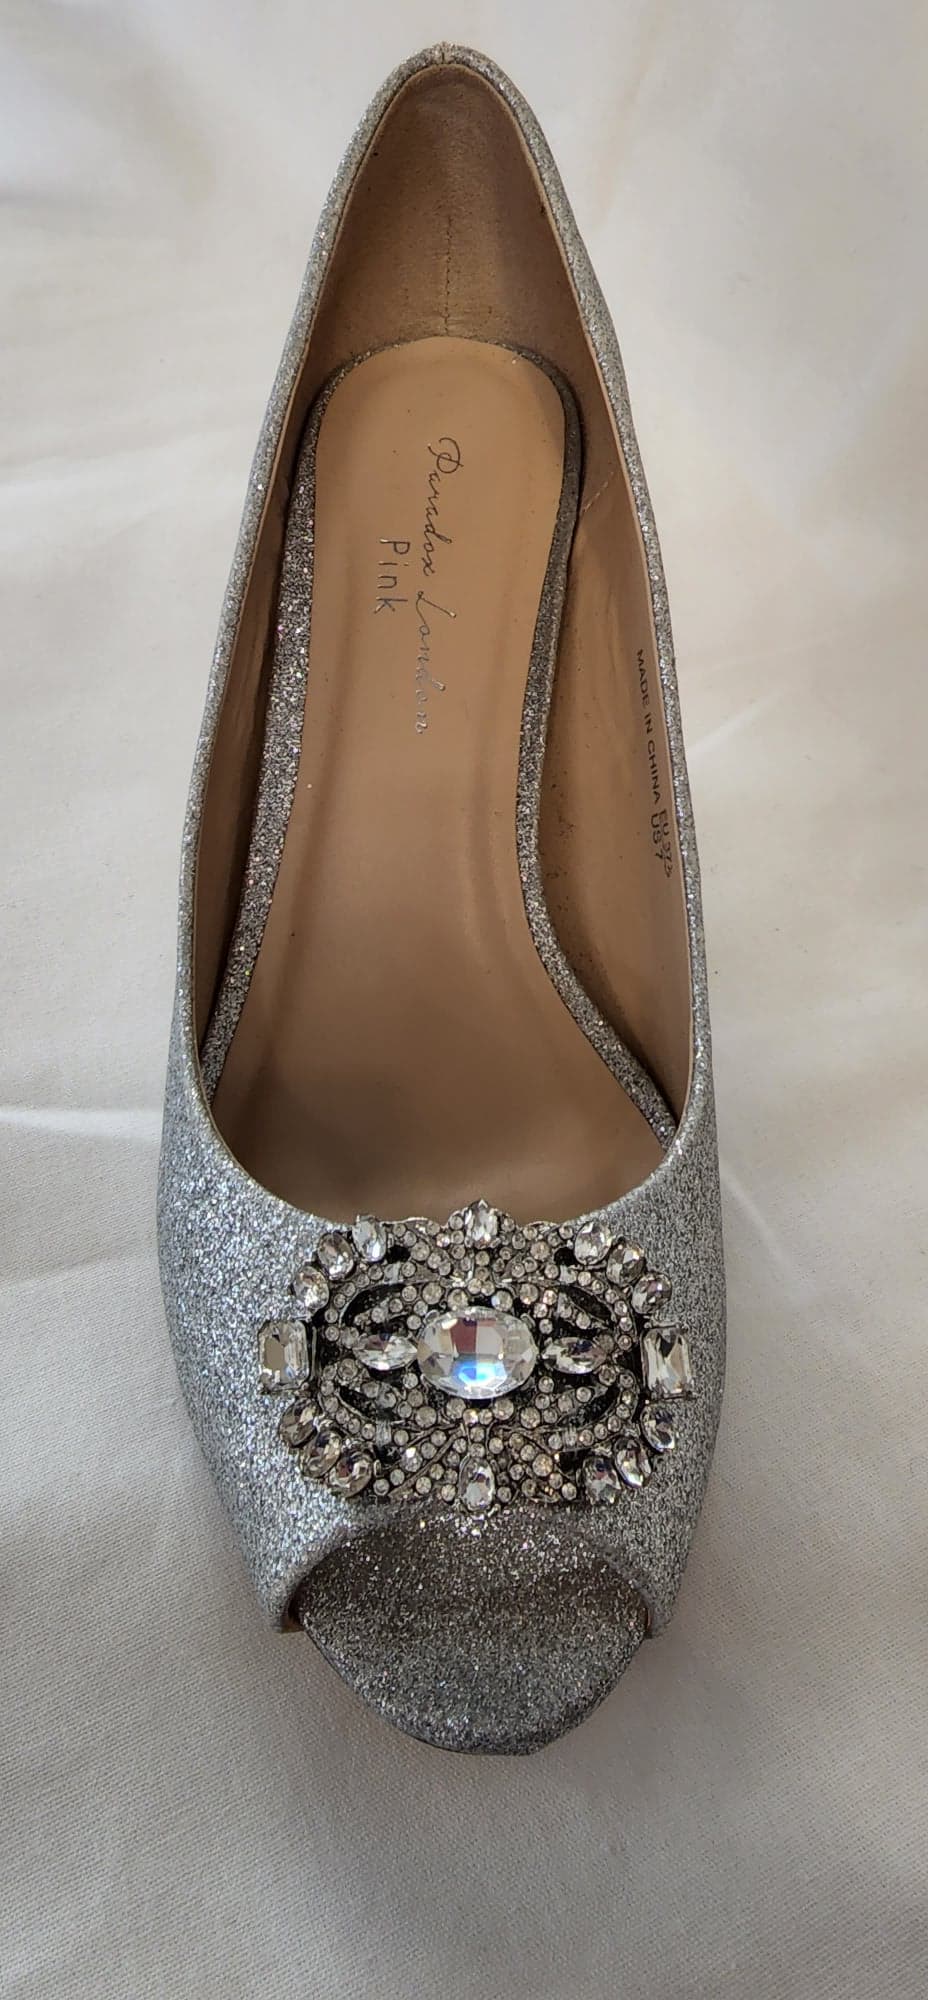 Paradox London Shoe Prunella Silver size 7